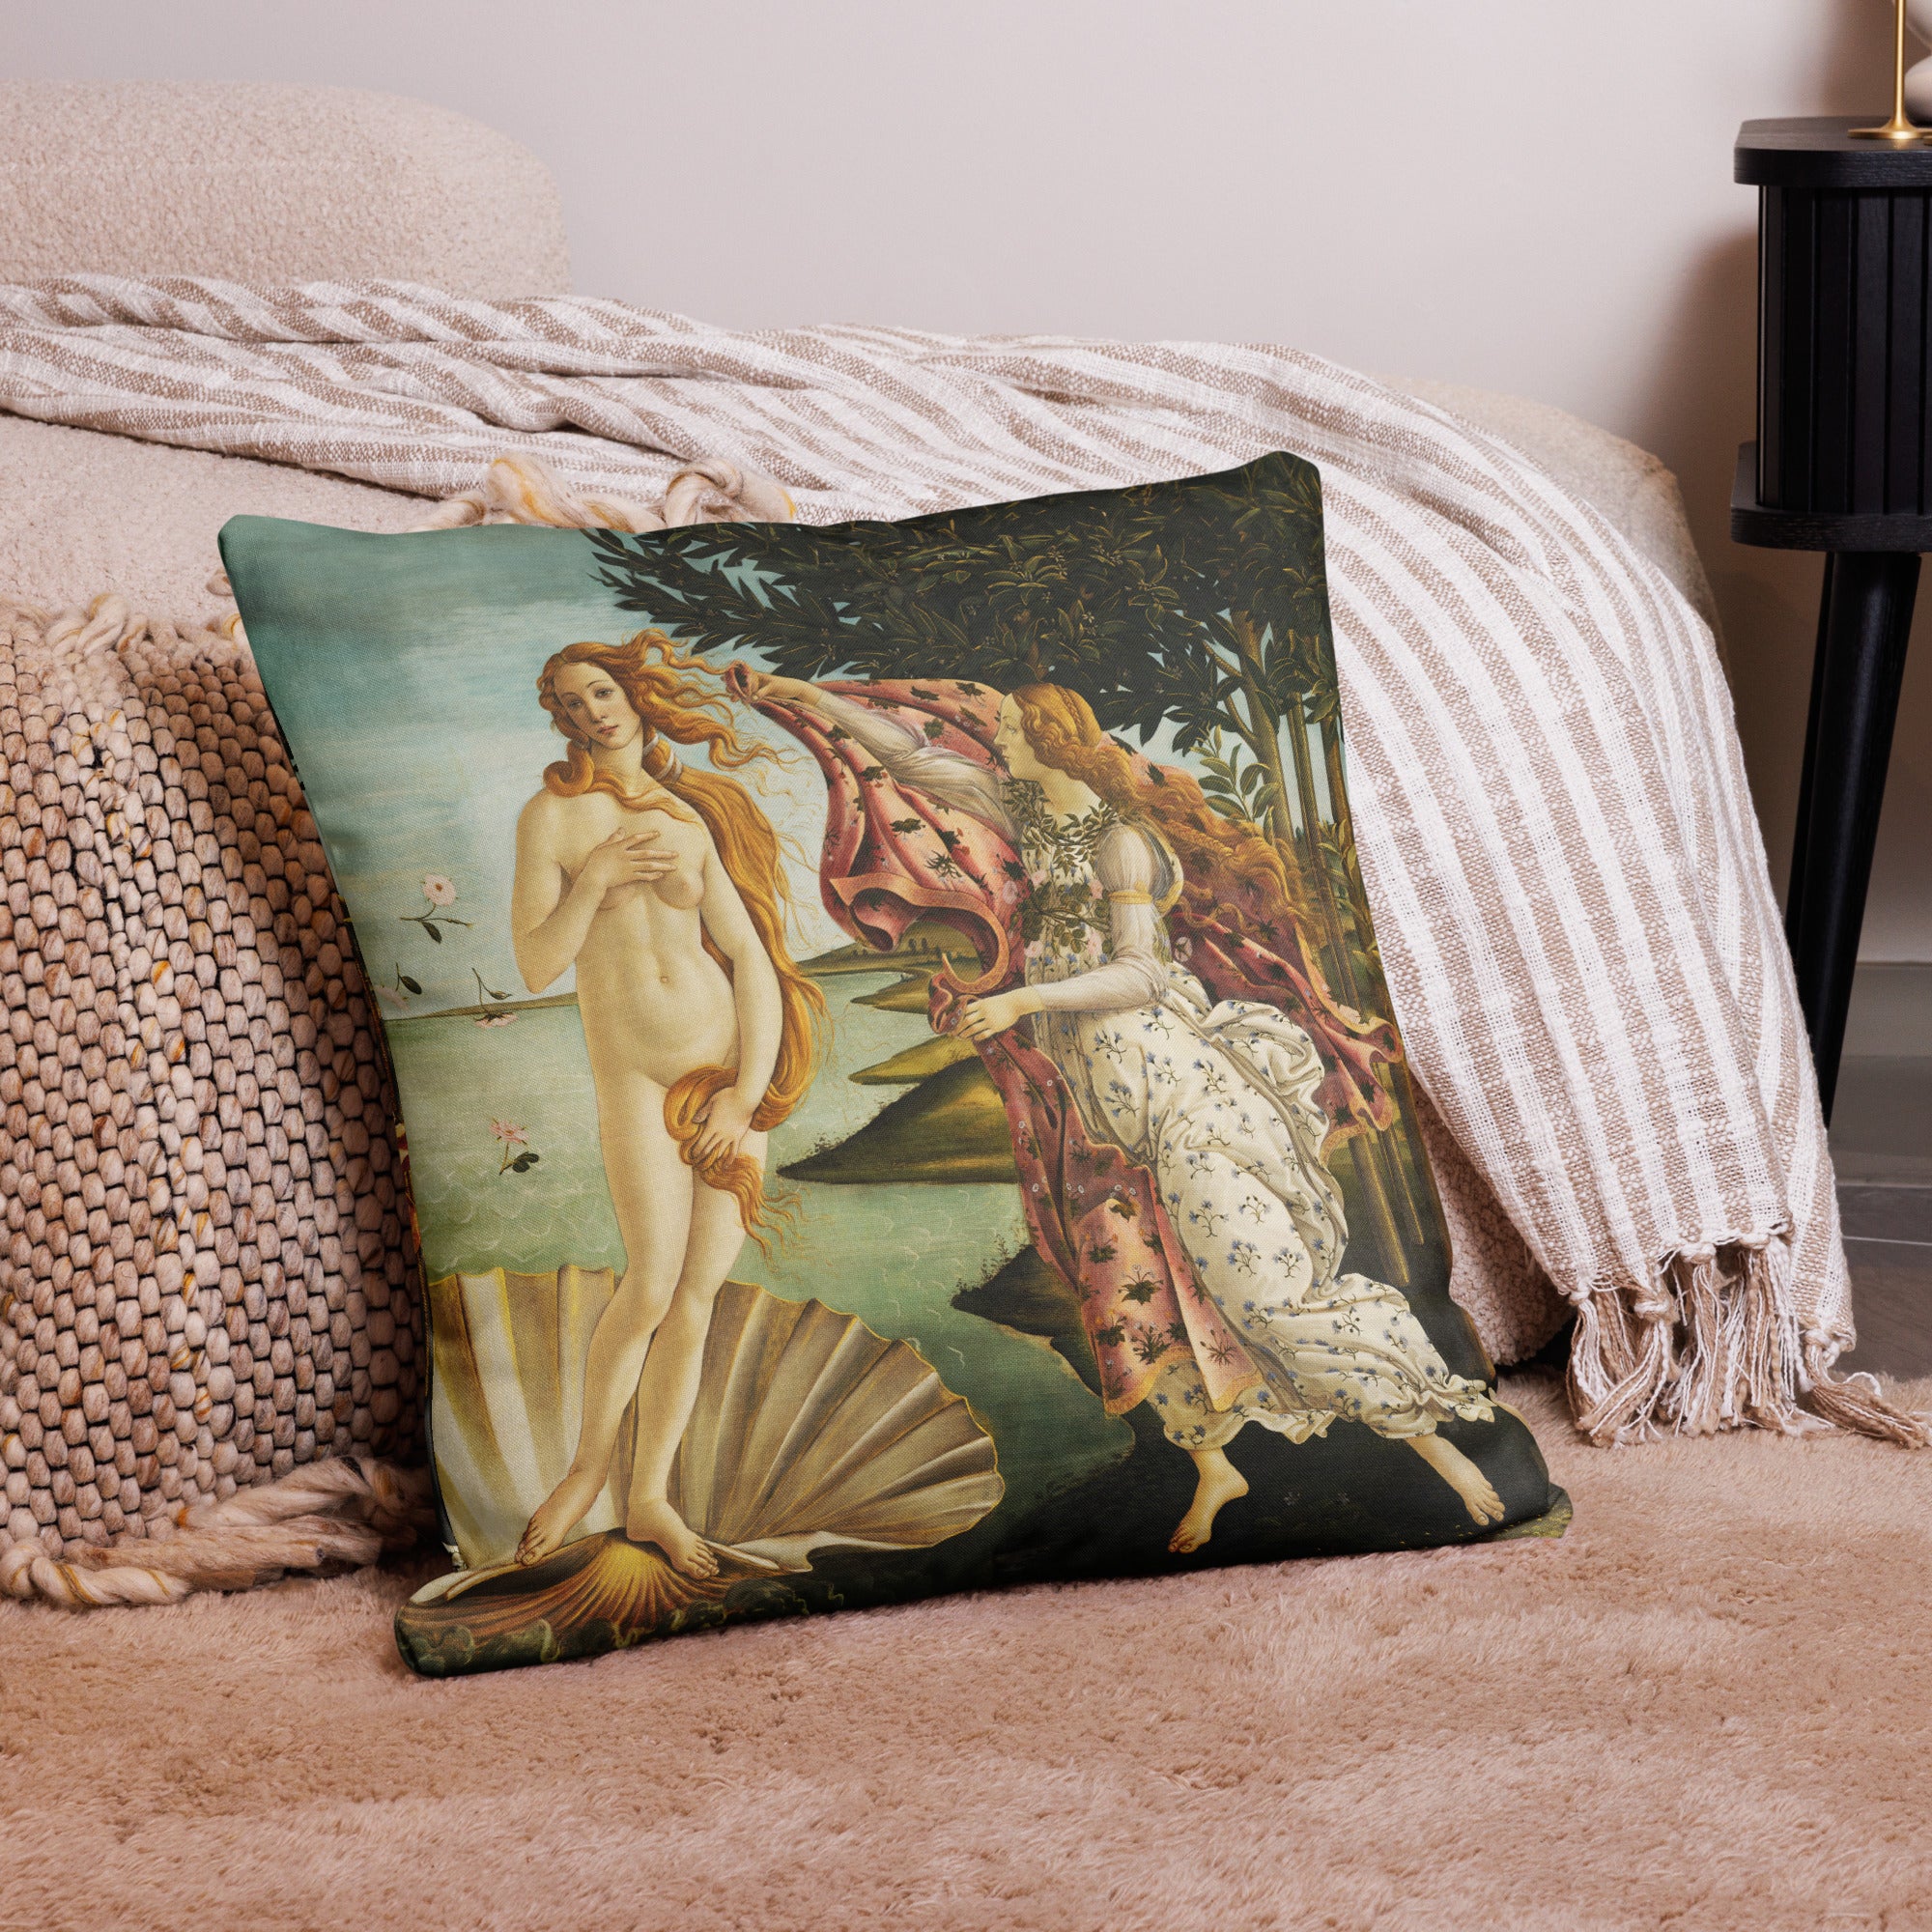 Premium-Kissen „Die Geburt der Venus“ von Sandro Botticelli, berühmtes Gemälde, Premium-Kunstkissen